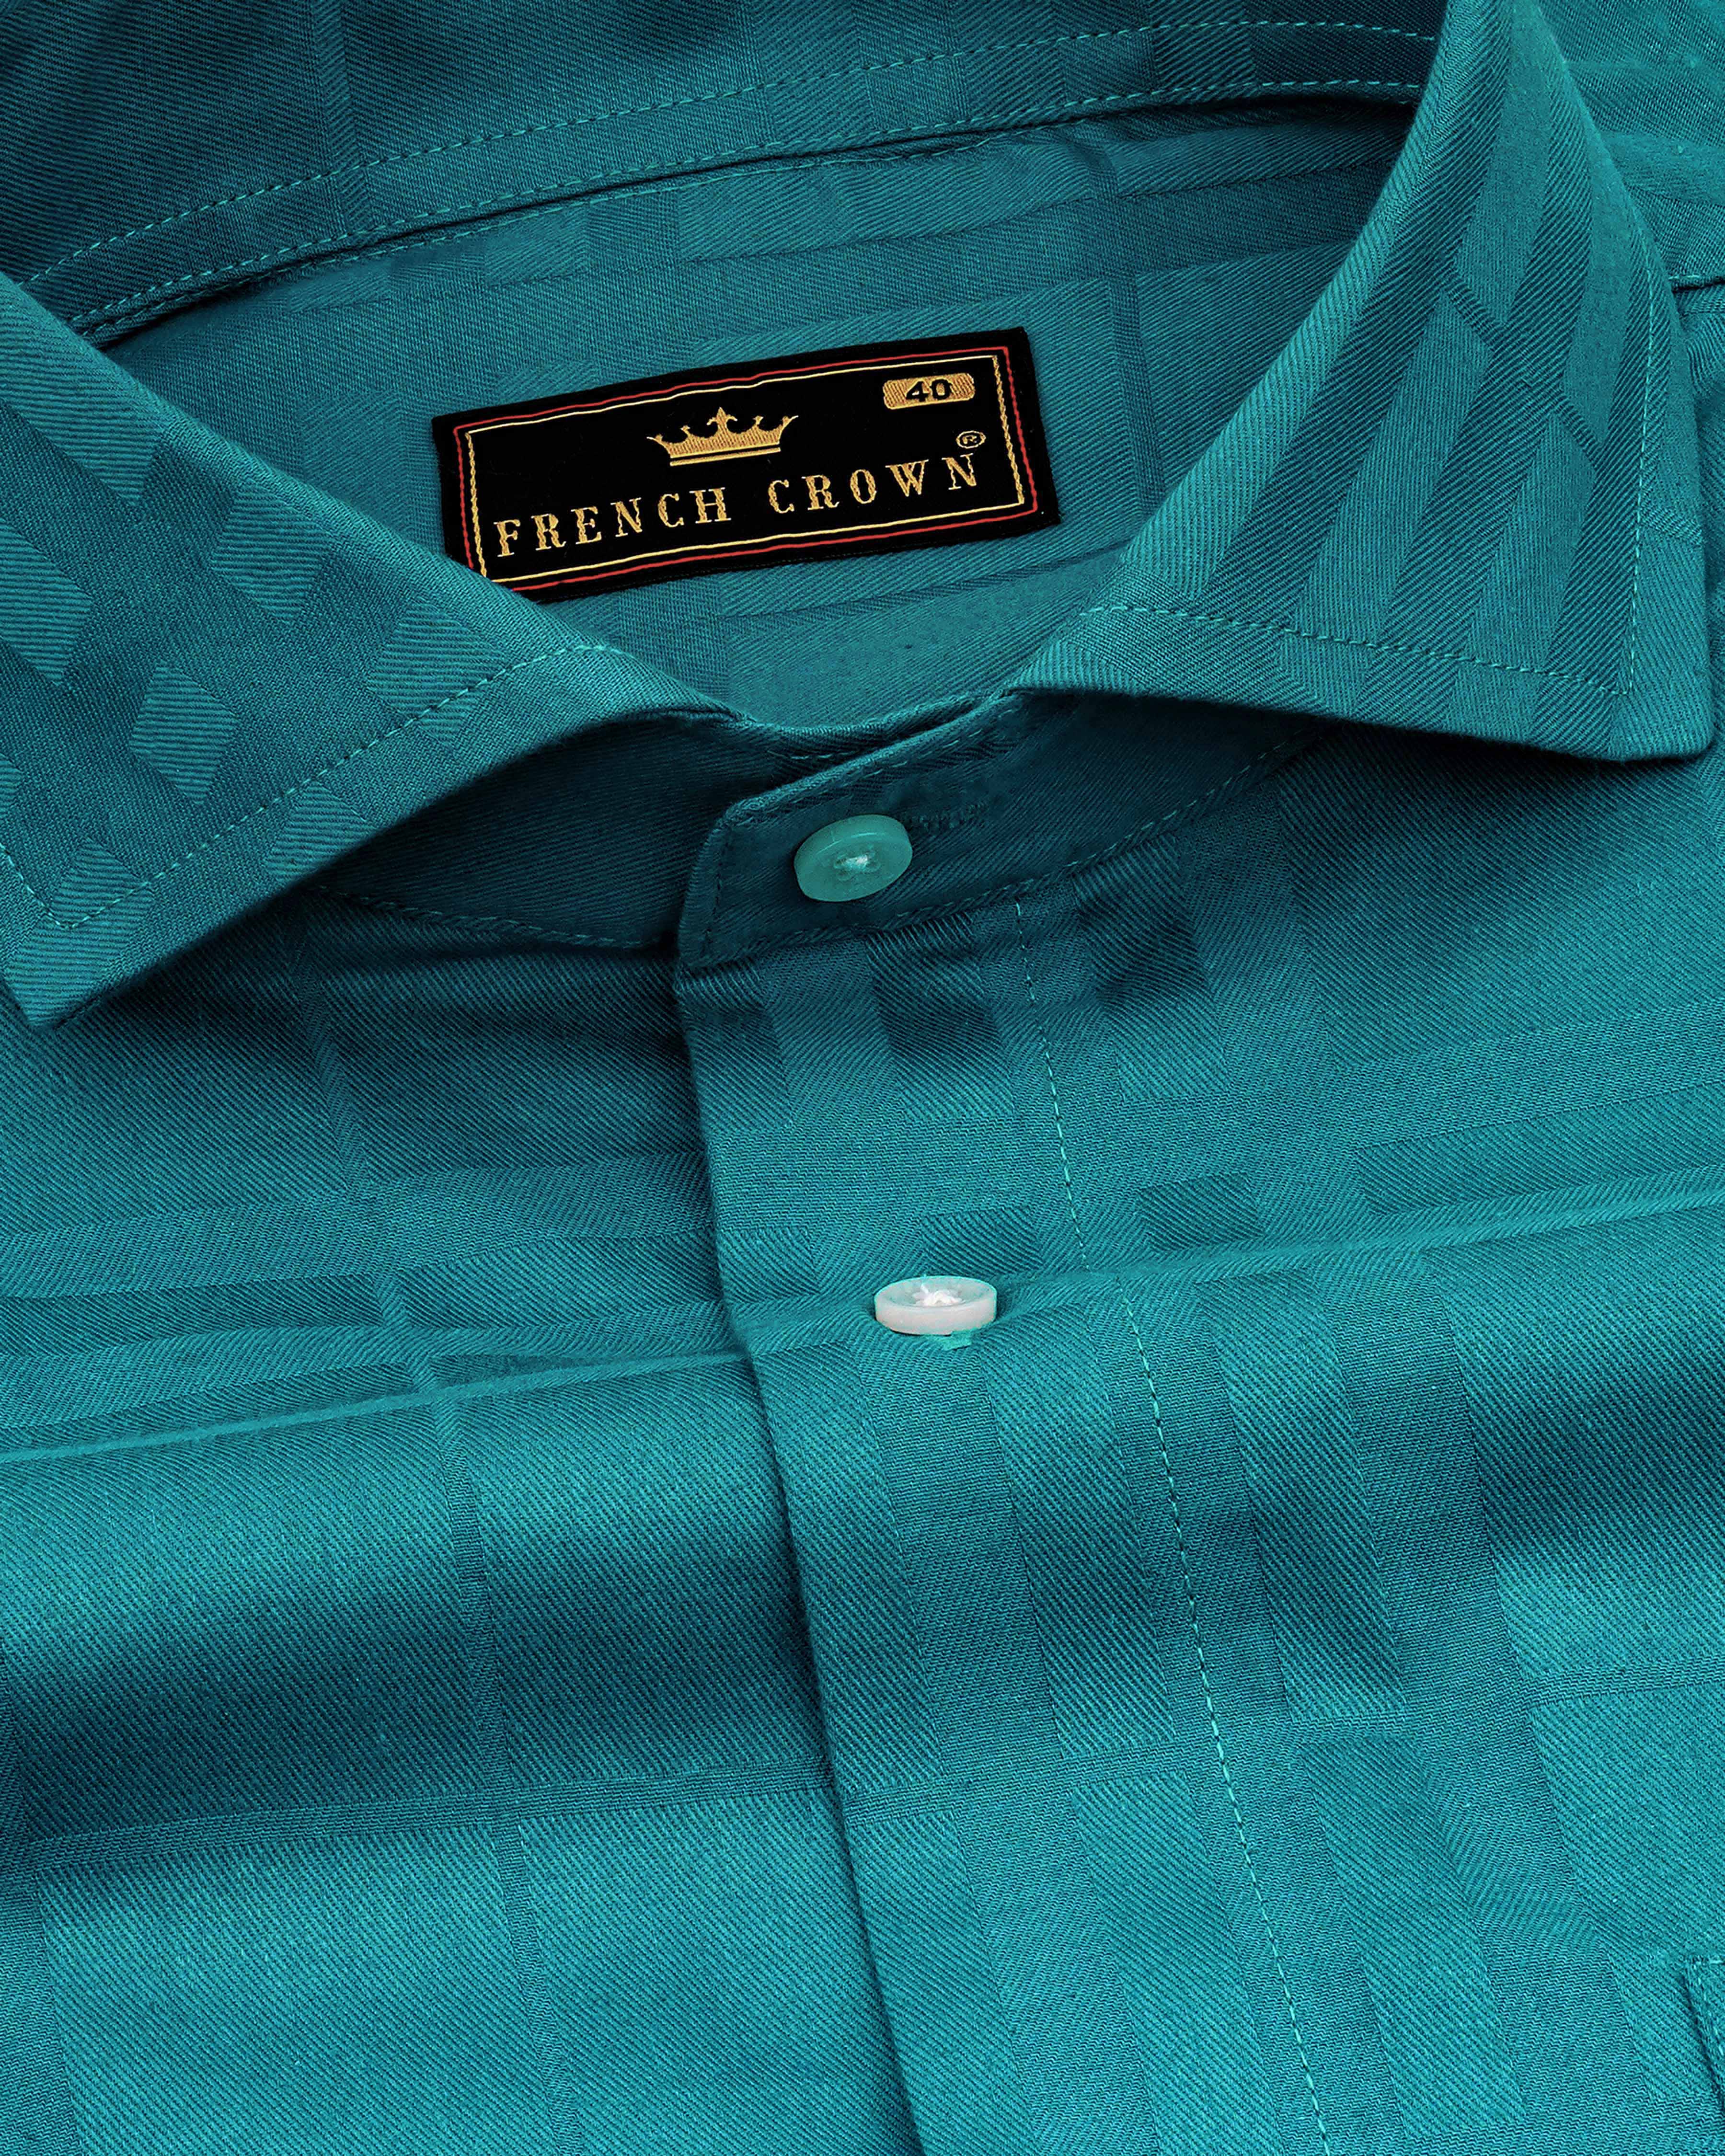 Surfie Green Plaid Dobby Textured Premium Giza Cotton Shirt